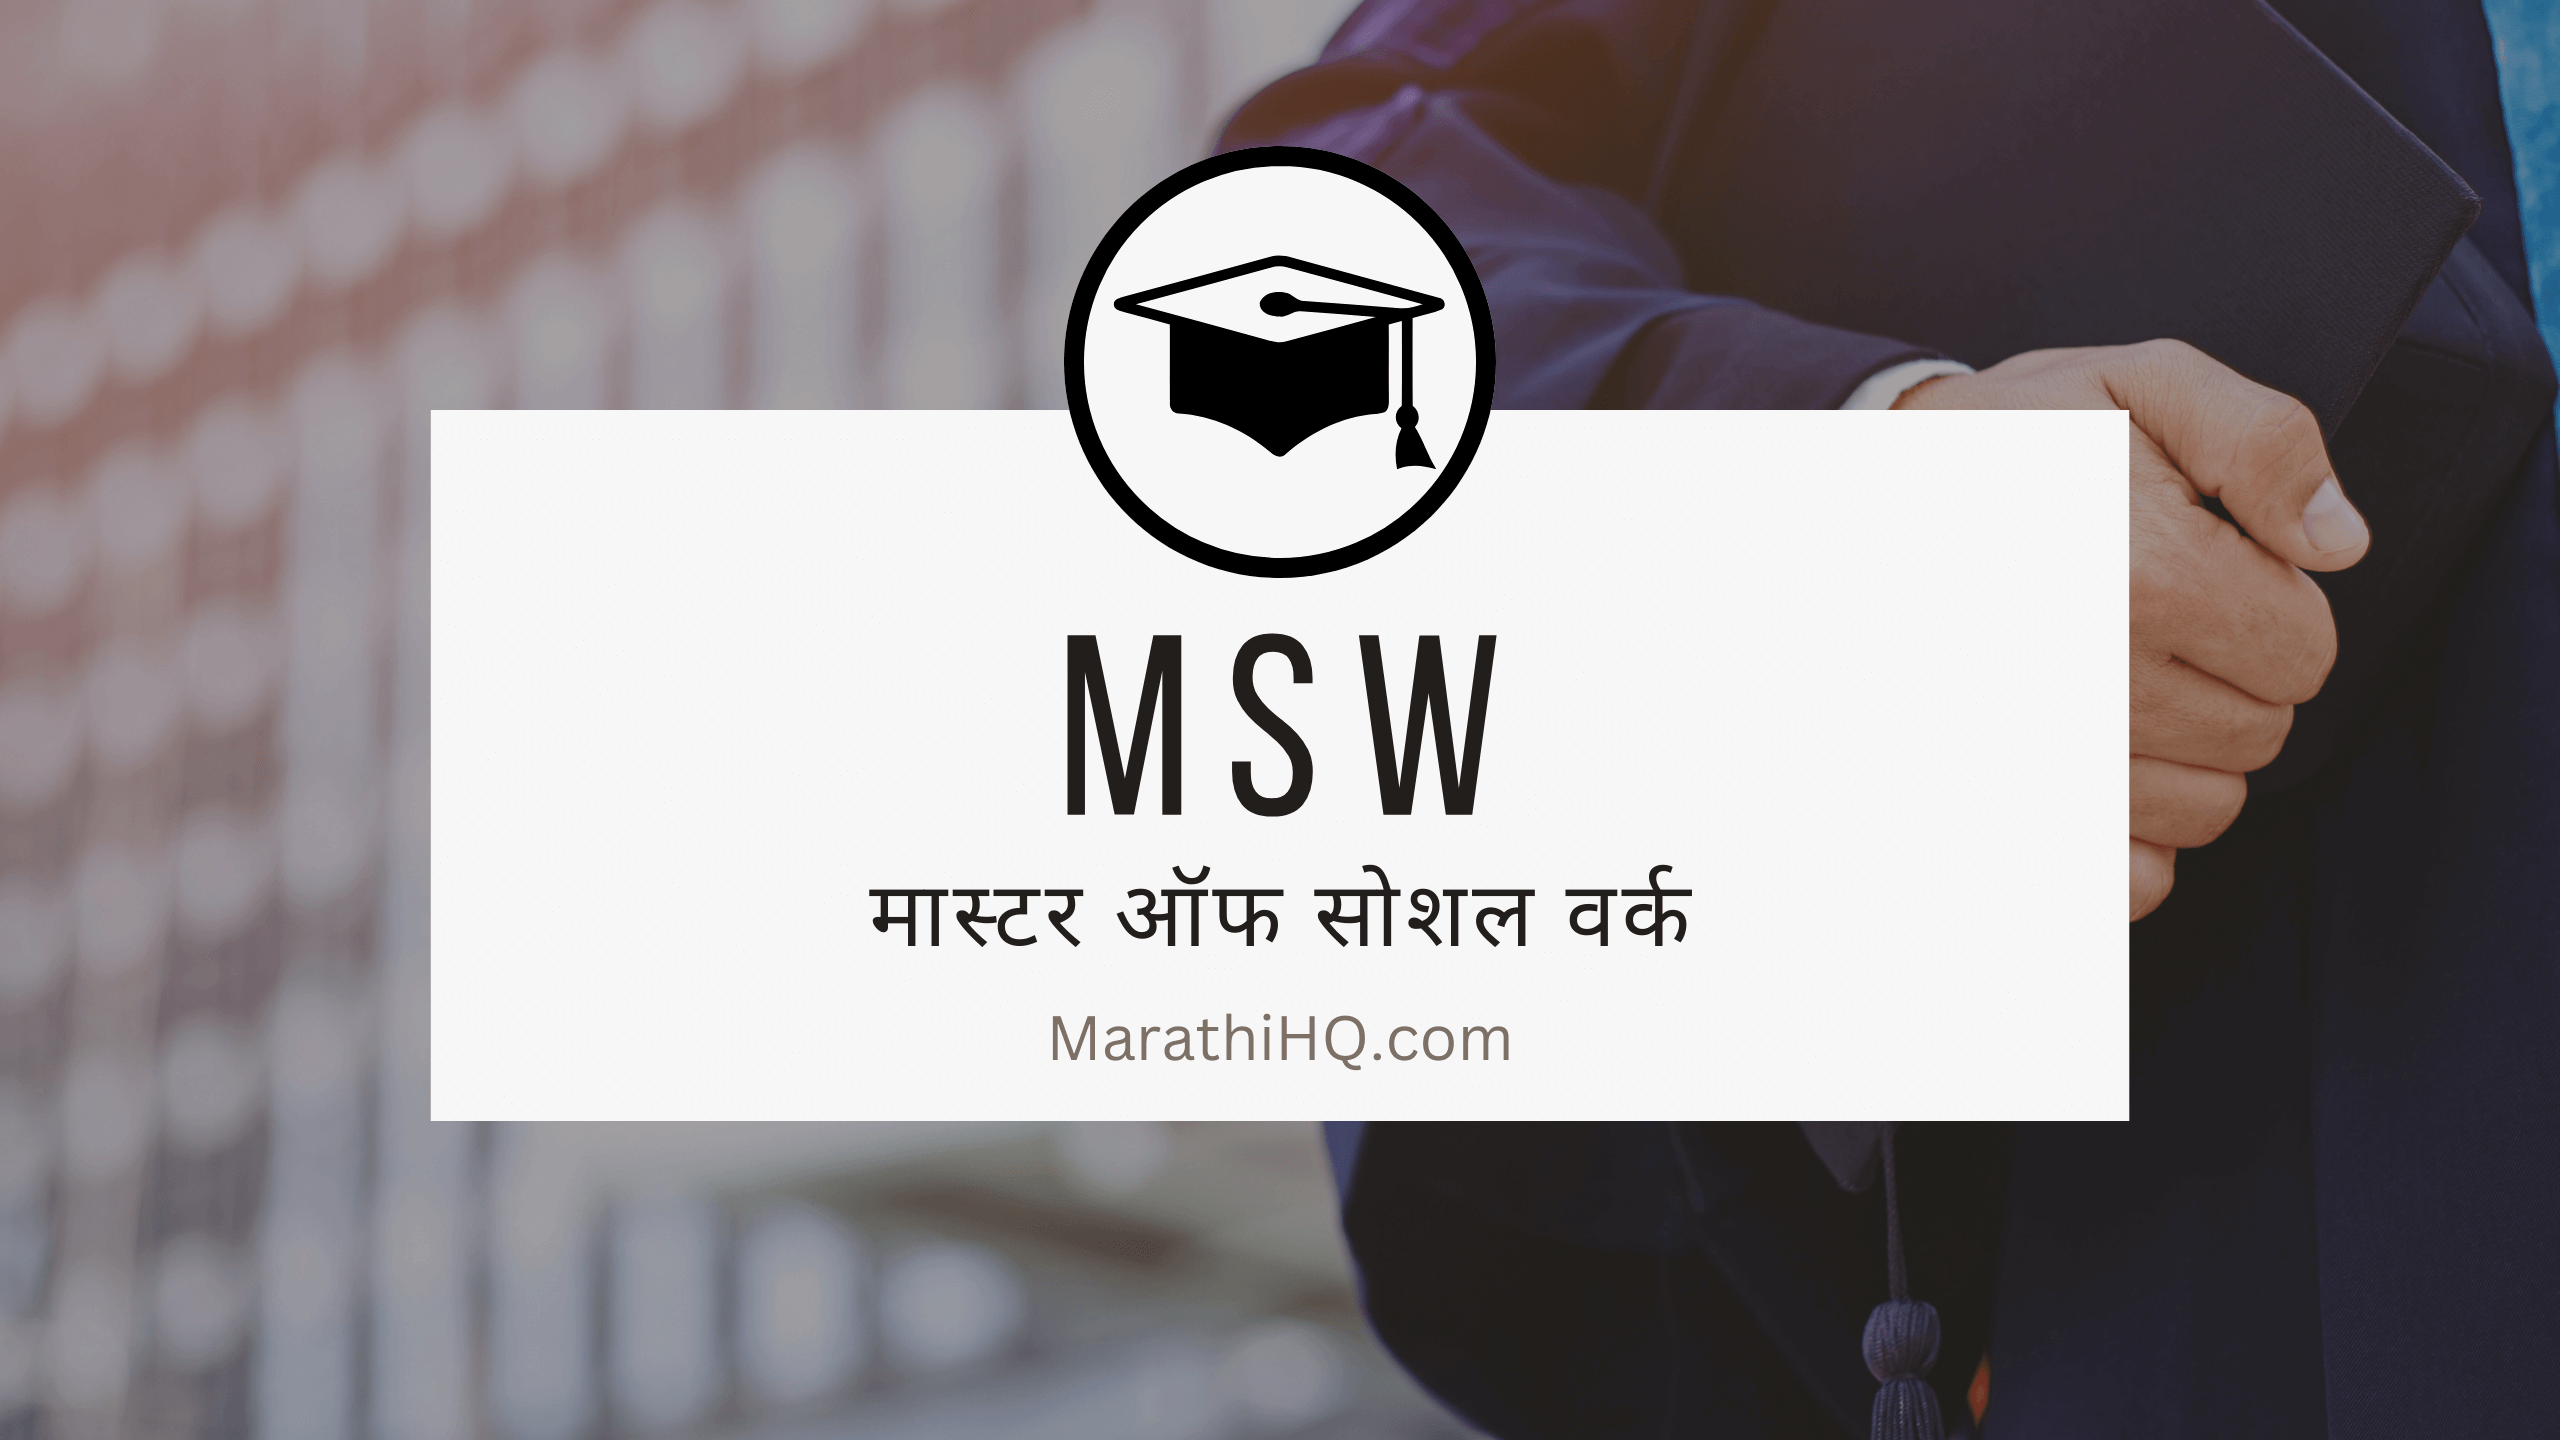 MSW Course Information in Marathi – पात्रता, प्रवेश प्रक्रिया, अभ्यासक्रम, कोर्स फी आणि बरेच काही